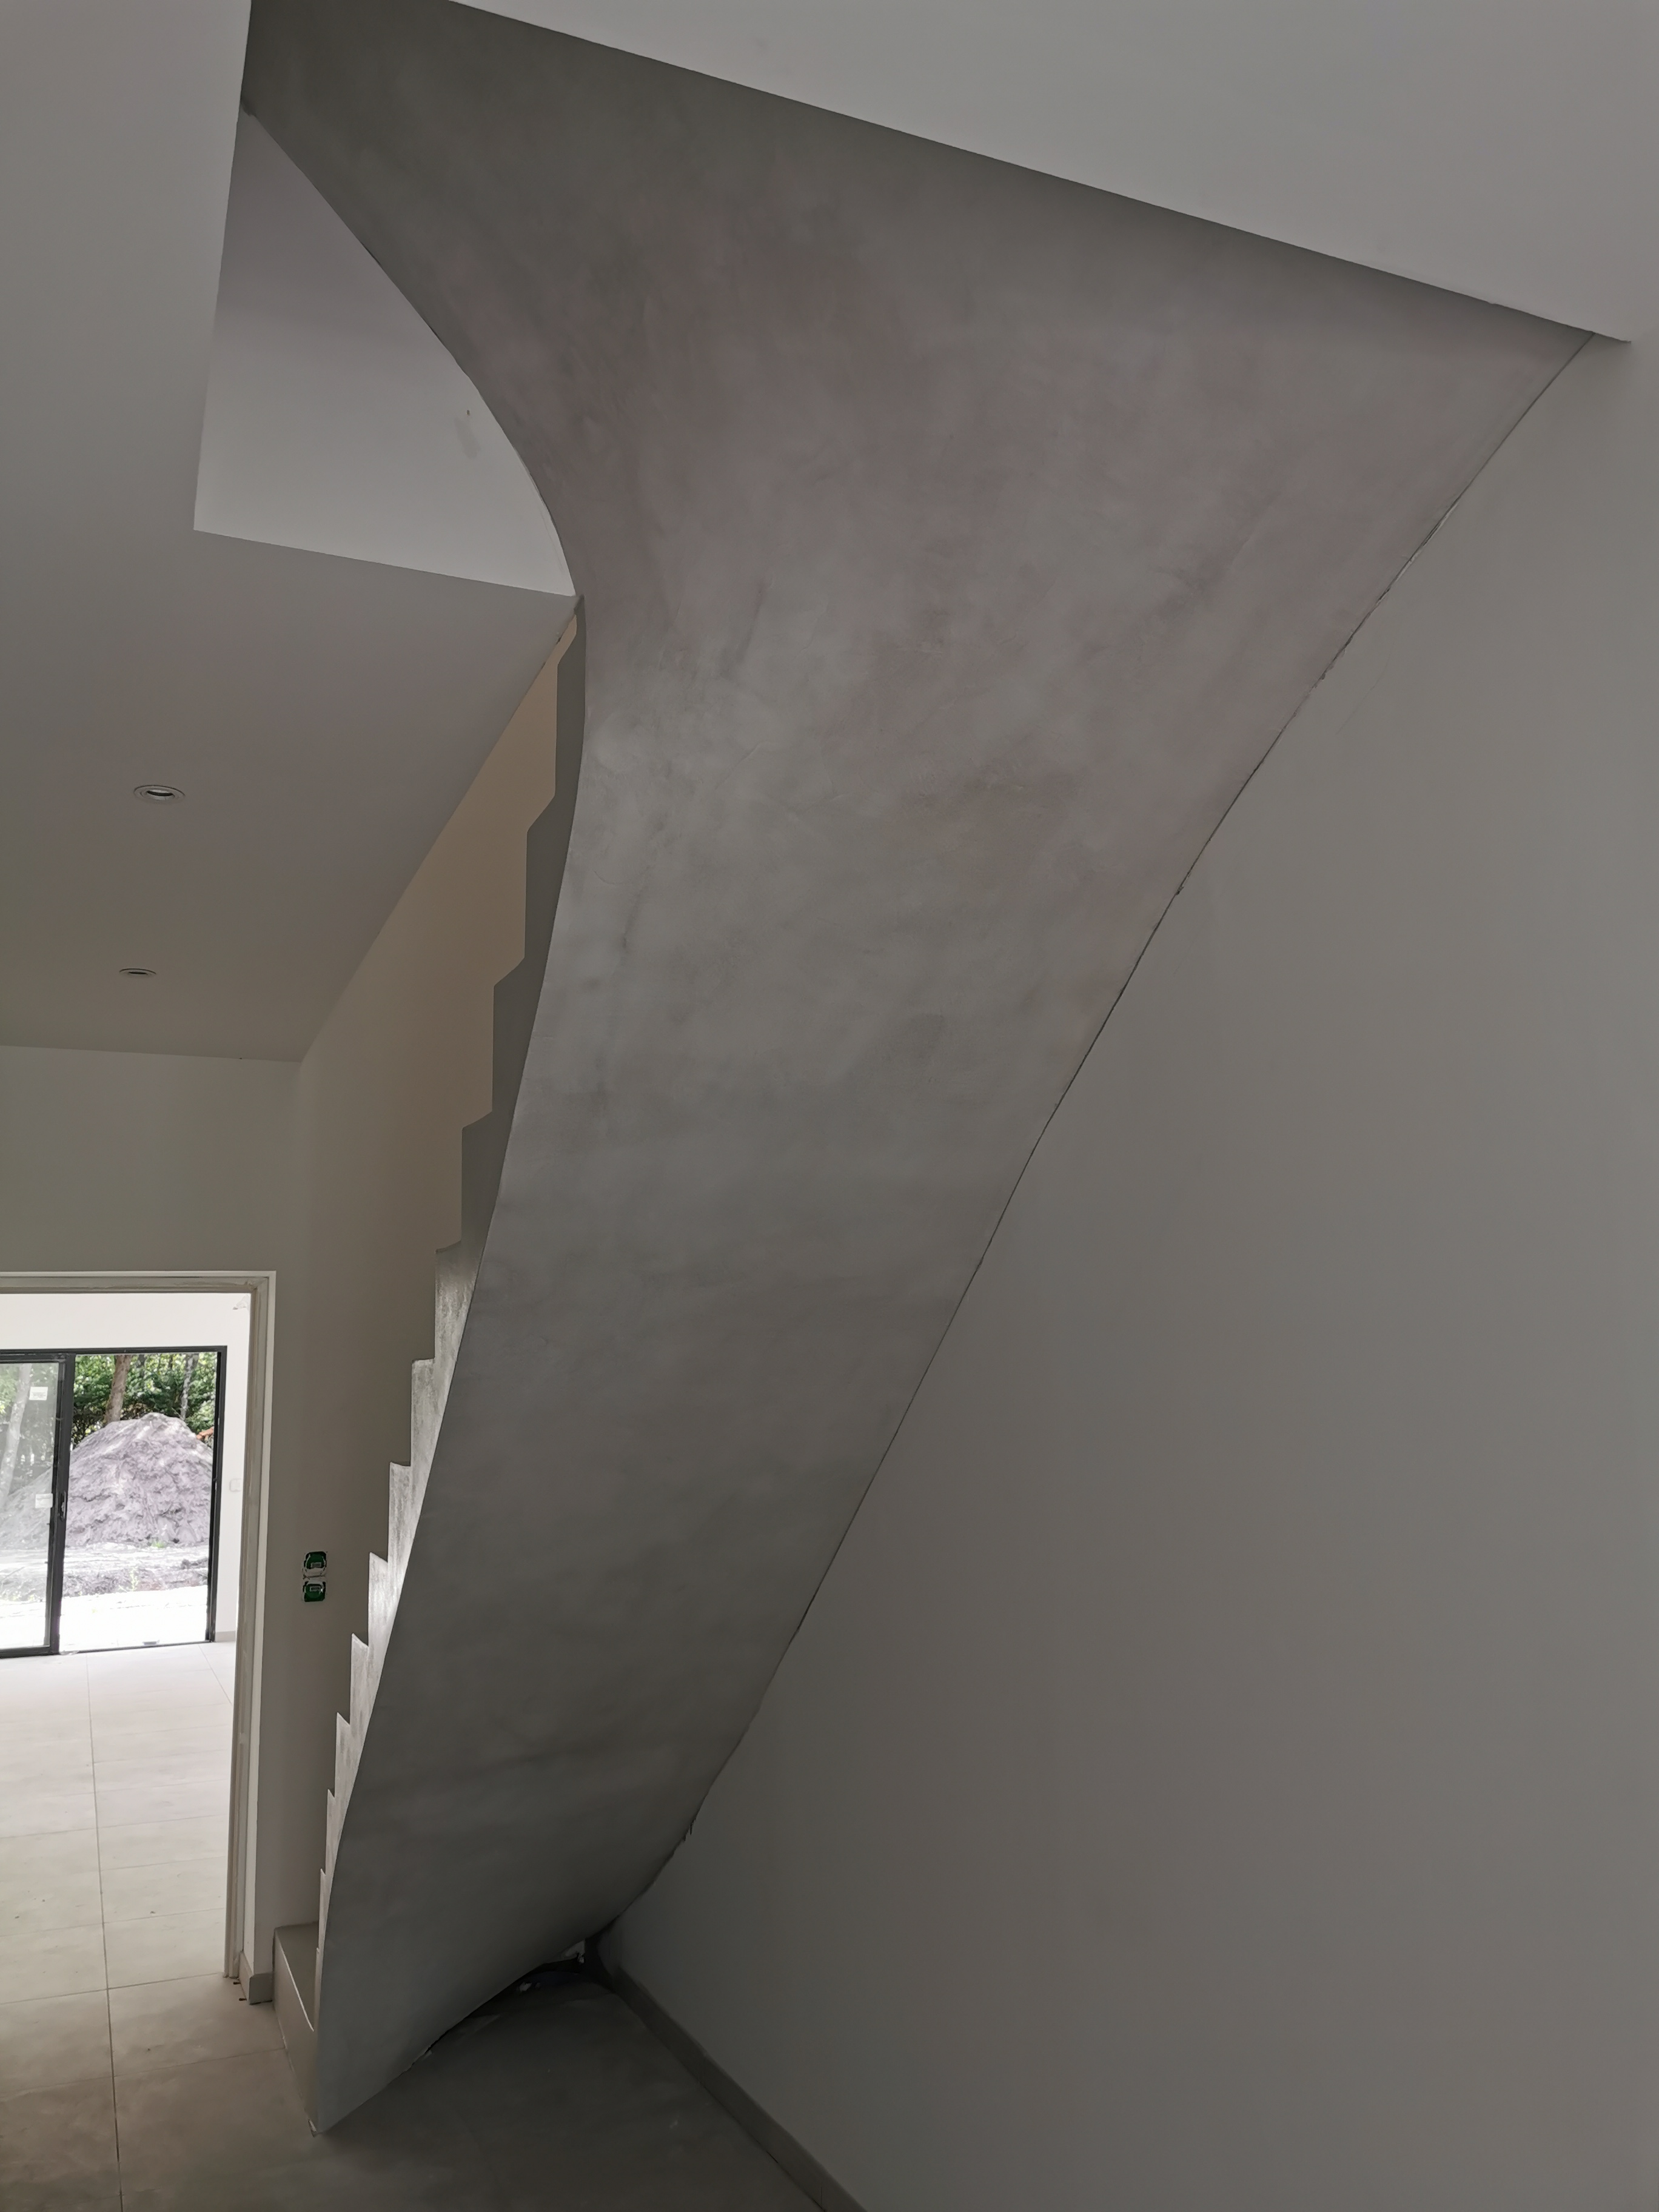 bel escalier à paillasse deux quart tournant en béton ciré vernis mat couleur gris cendré Blanquefort proche de Bordeaux en aquitaine pour un constructeur